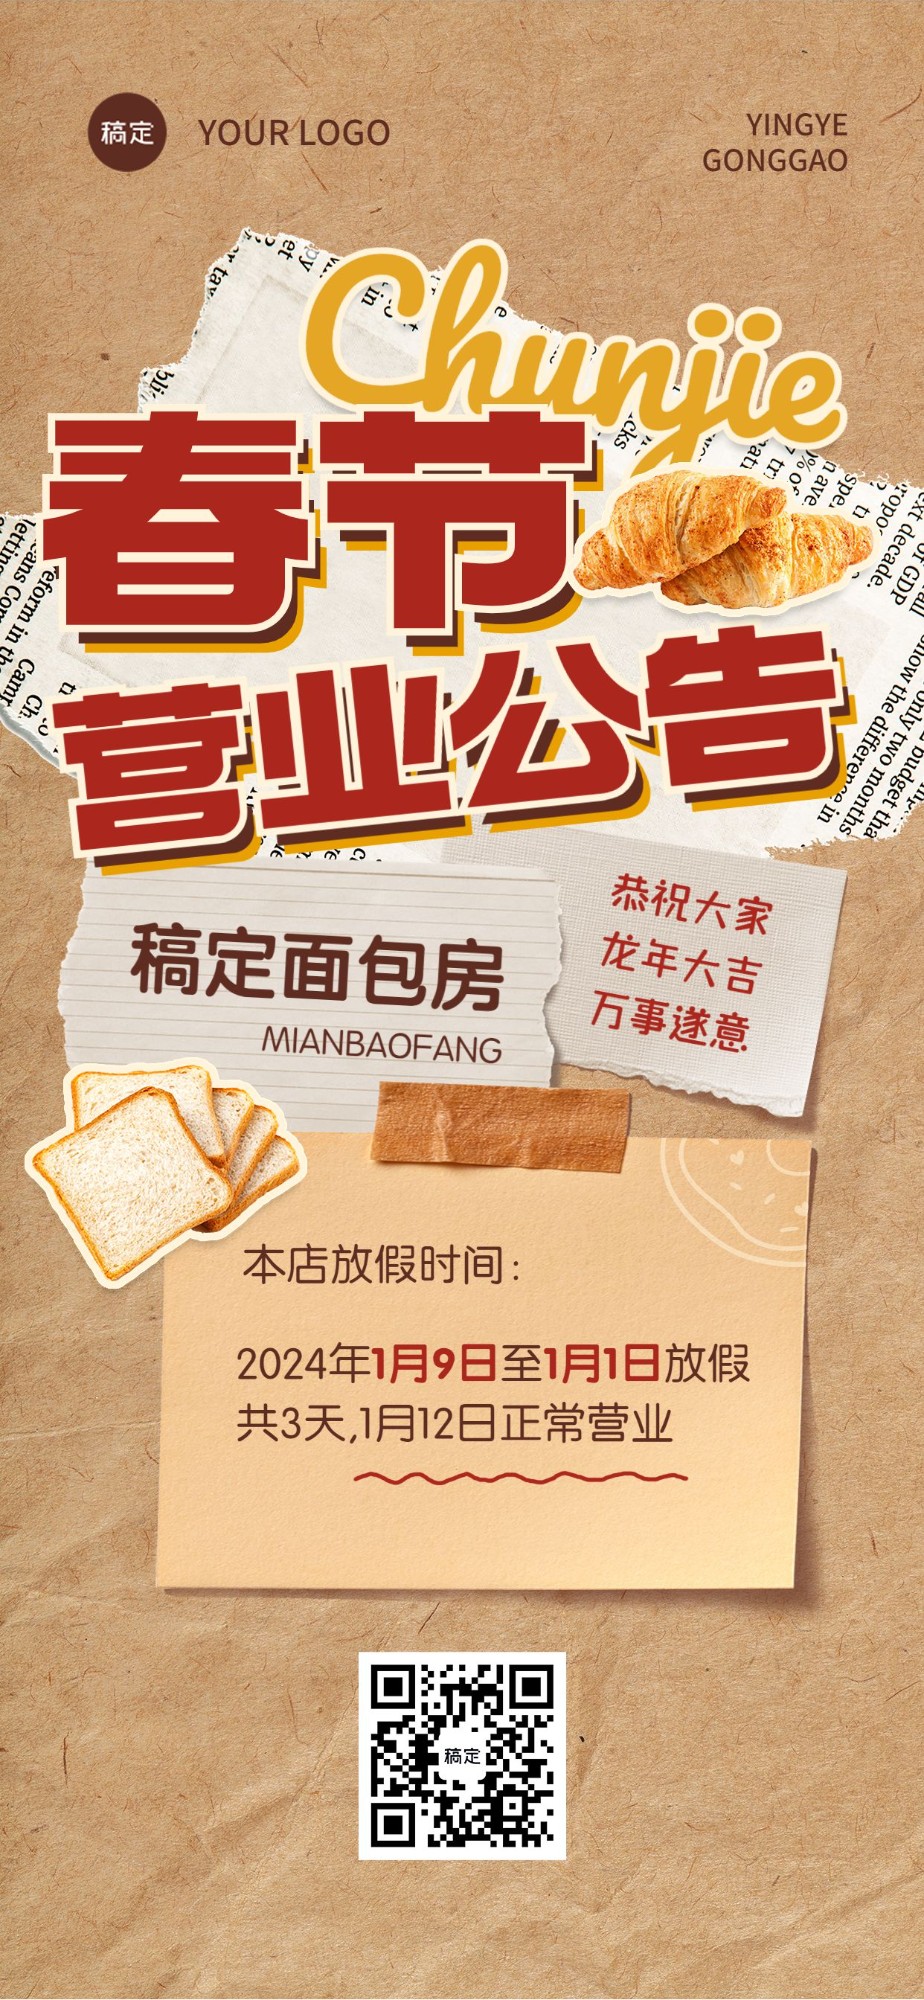 春节餐饮门店营业通知放假通知公告全屏竖版海报